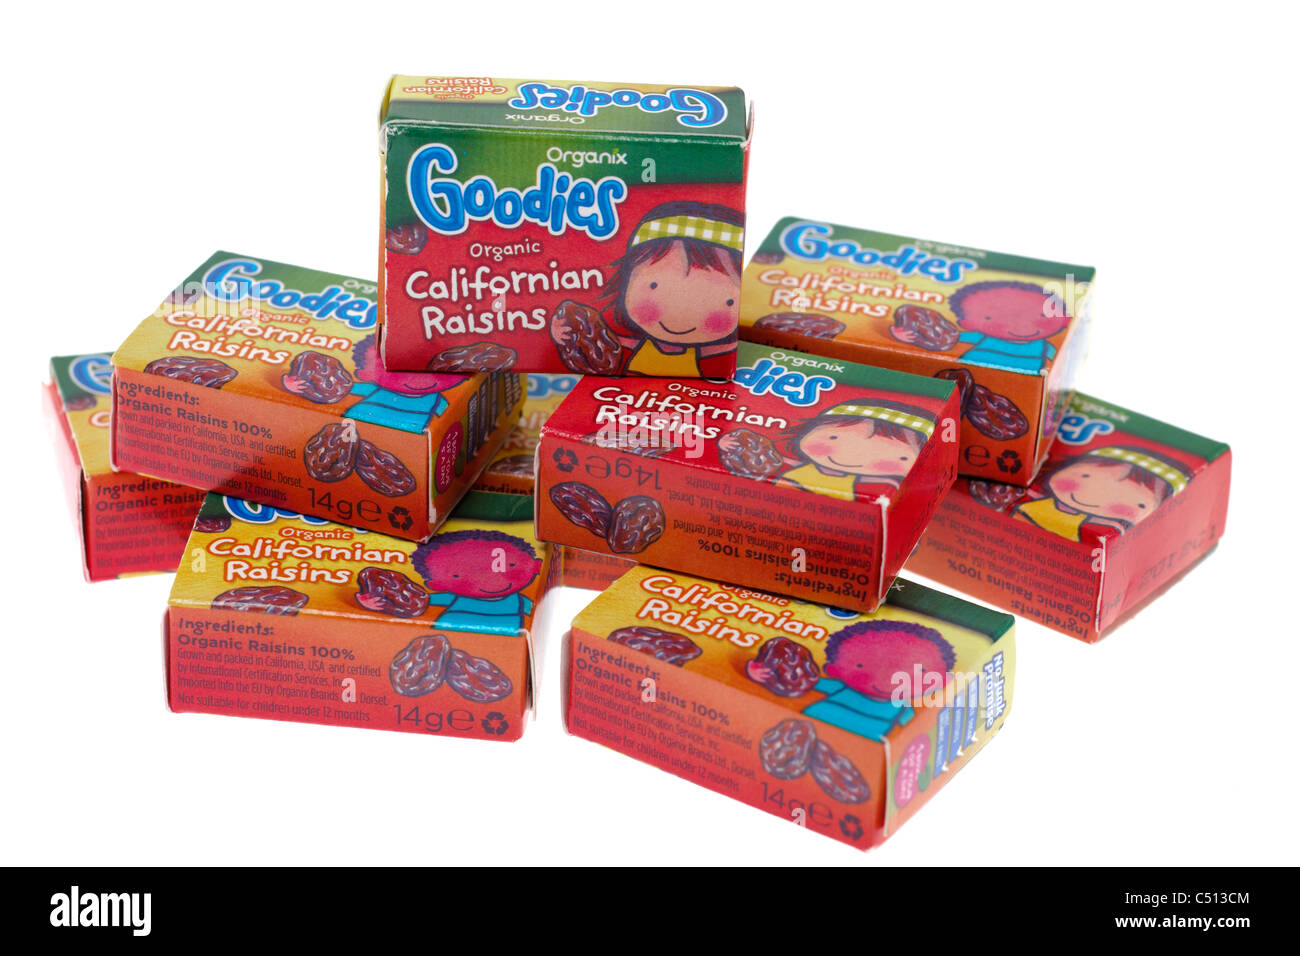 Plusieurs 14 gramme boxed Organix goodies excellent pour les enfants biologiques de goûters sains Raisins californien Banque D'Images